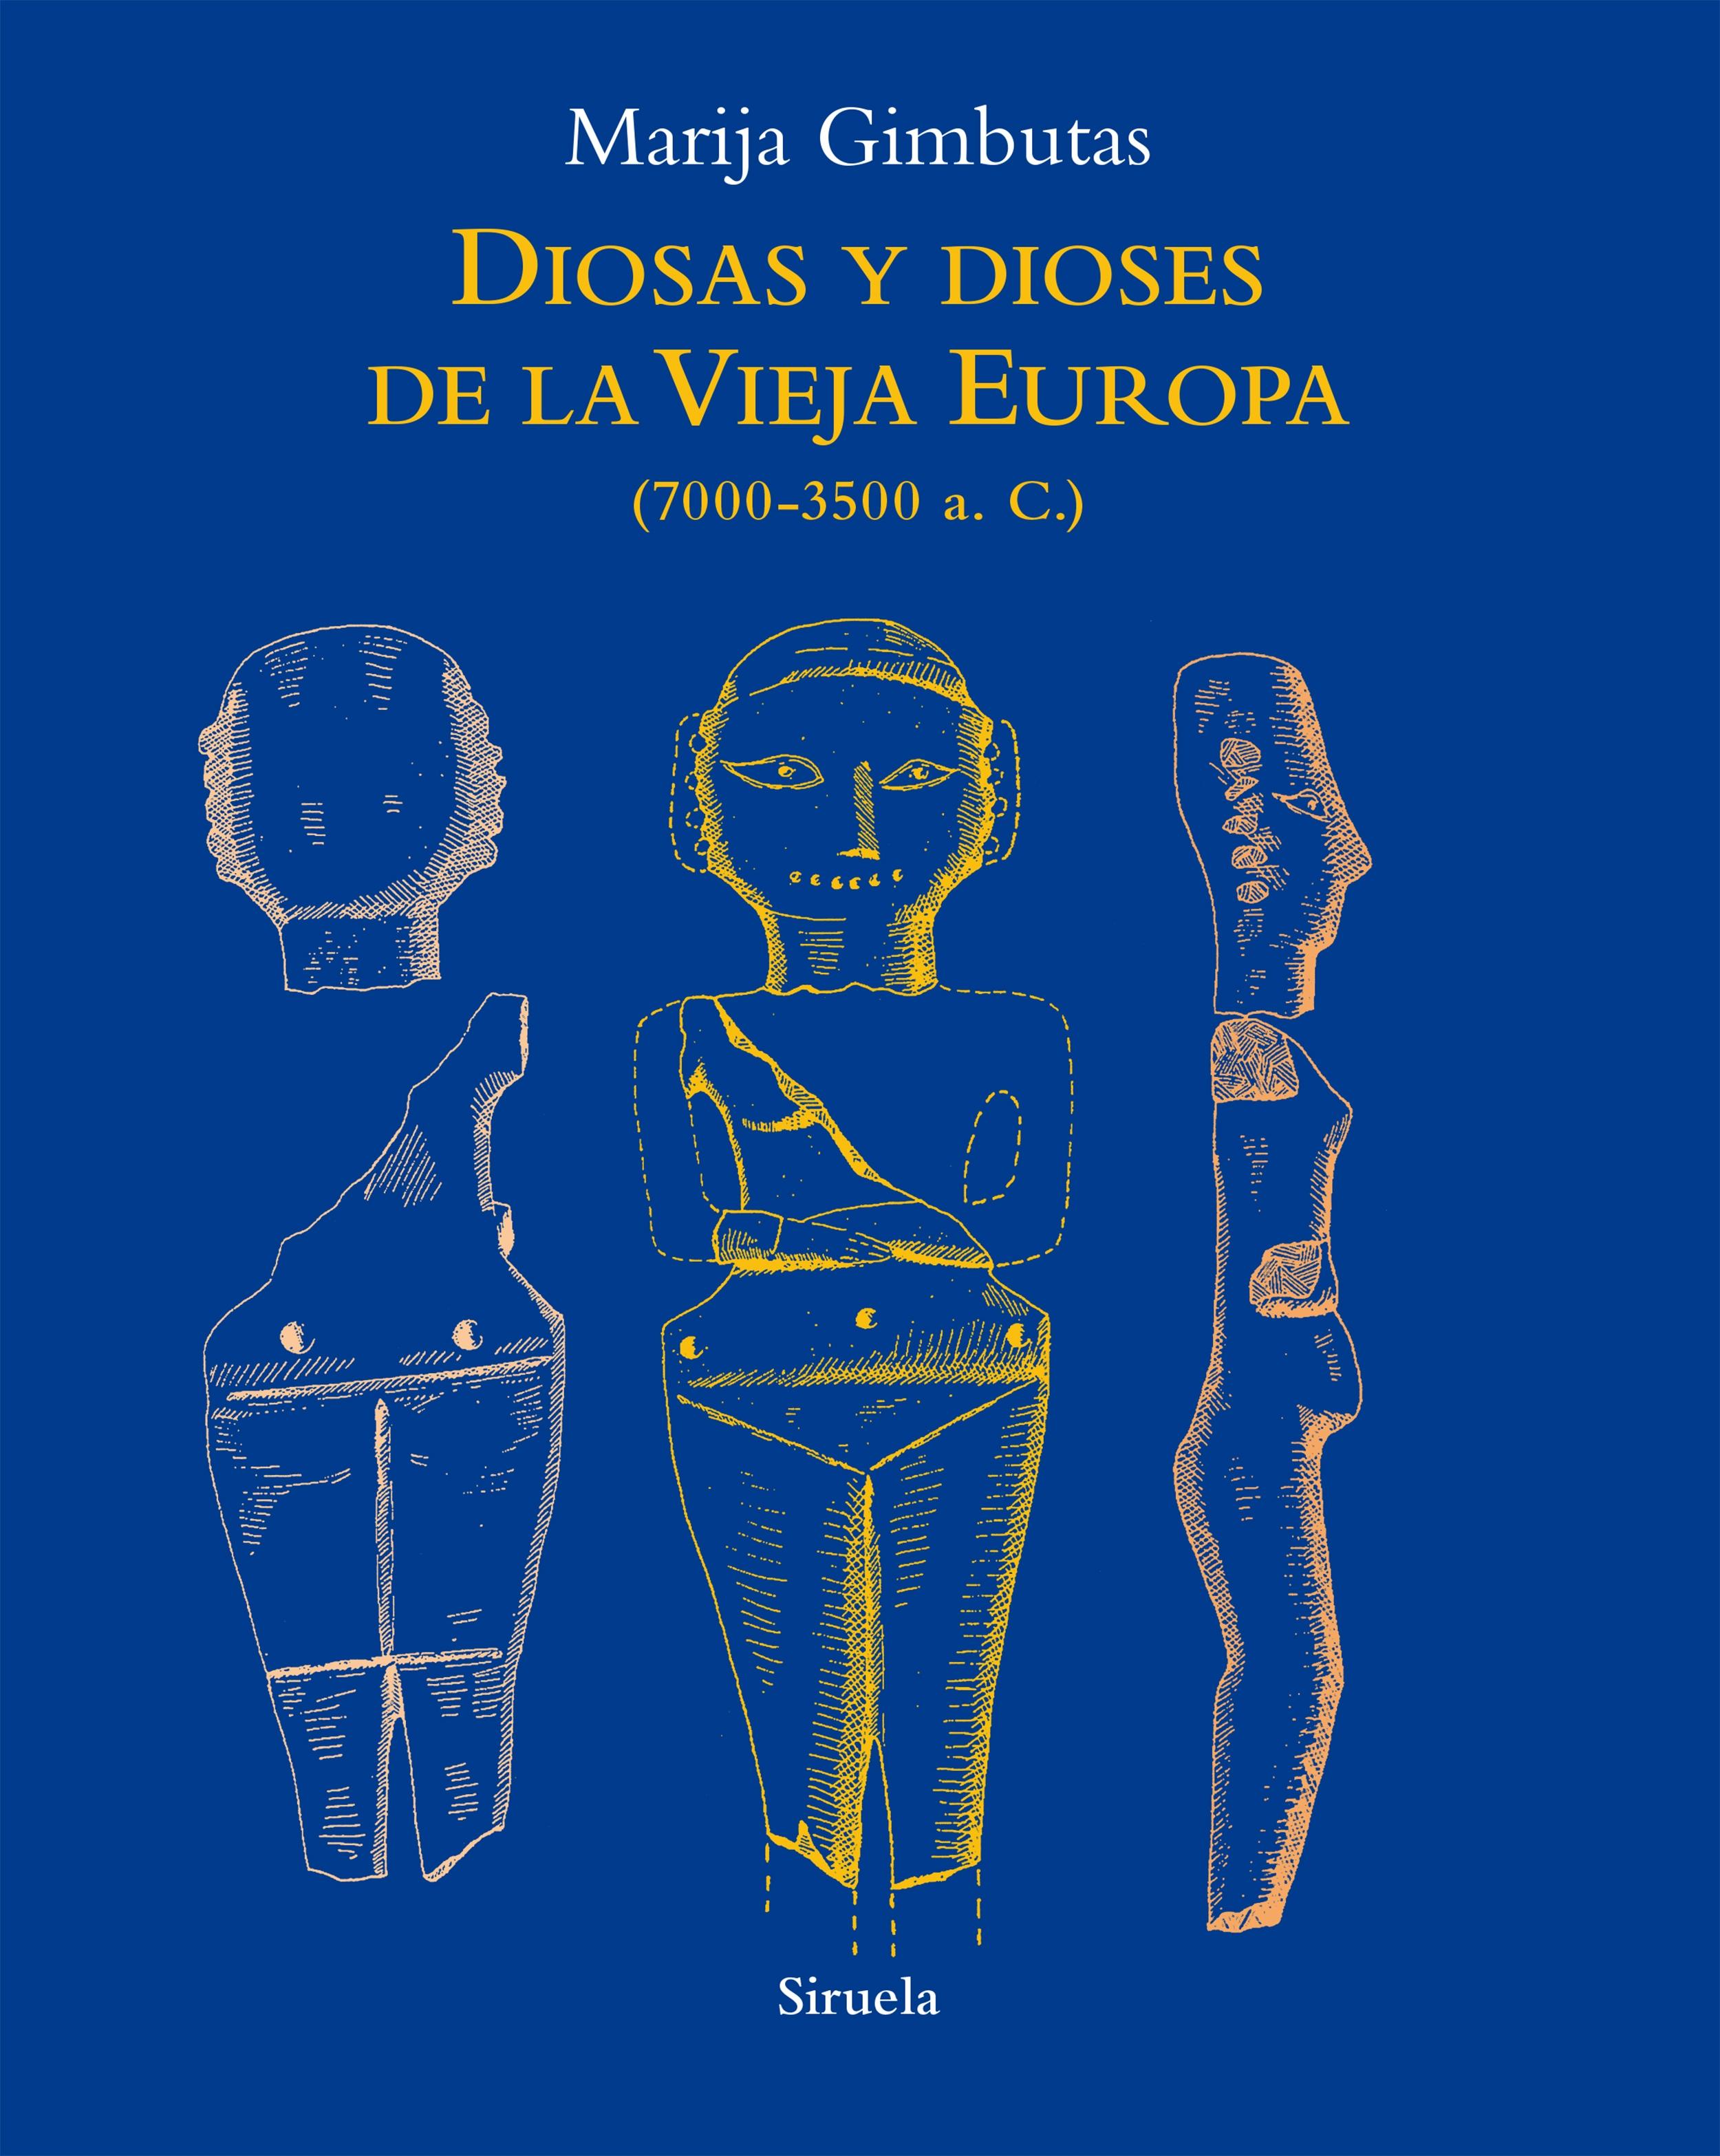 Diosas y dioses de la Vieja Europa "(7000-3500 a.C.)". 